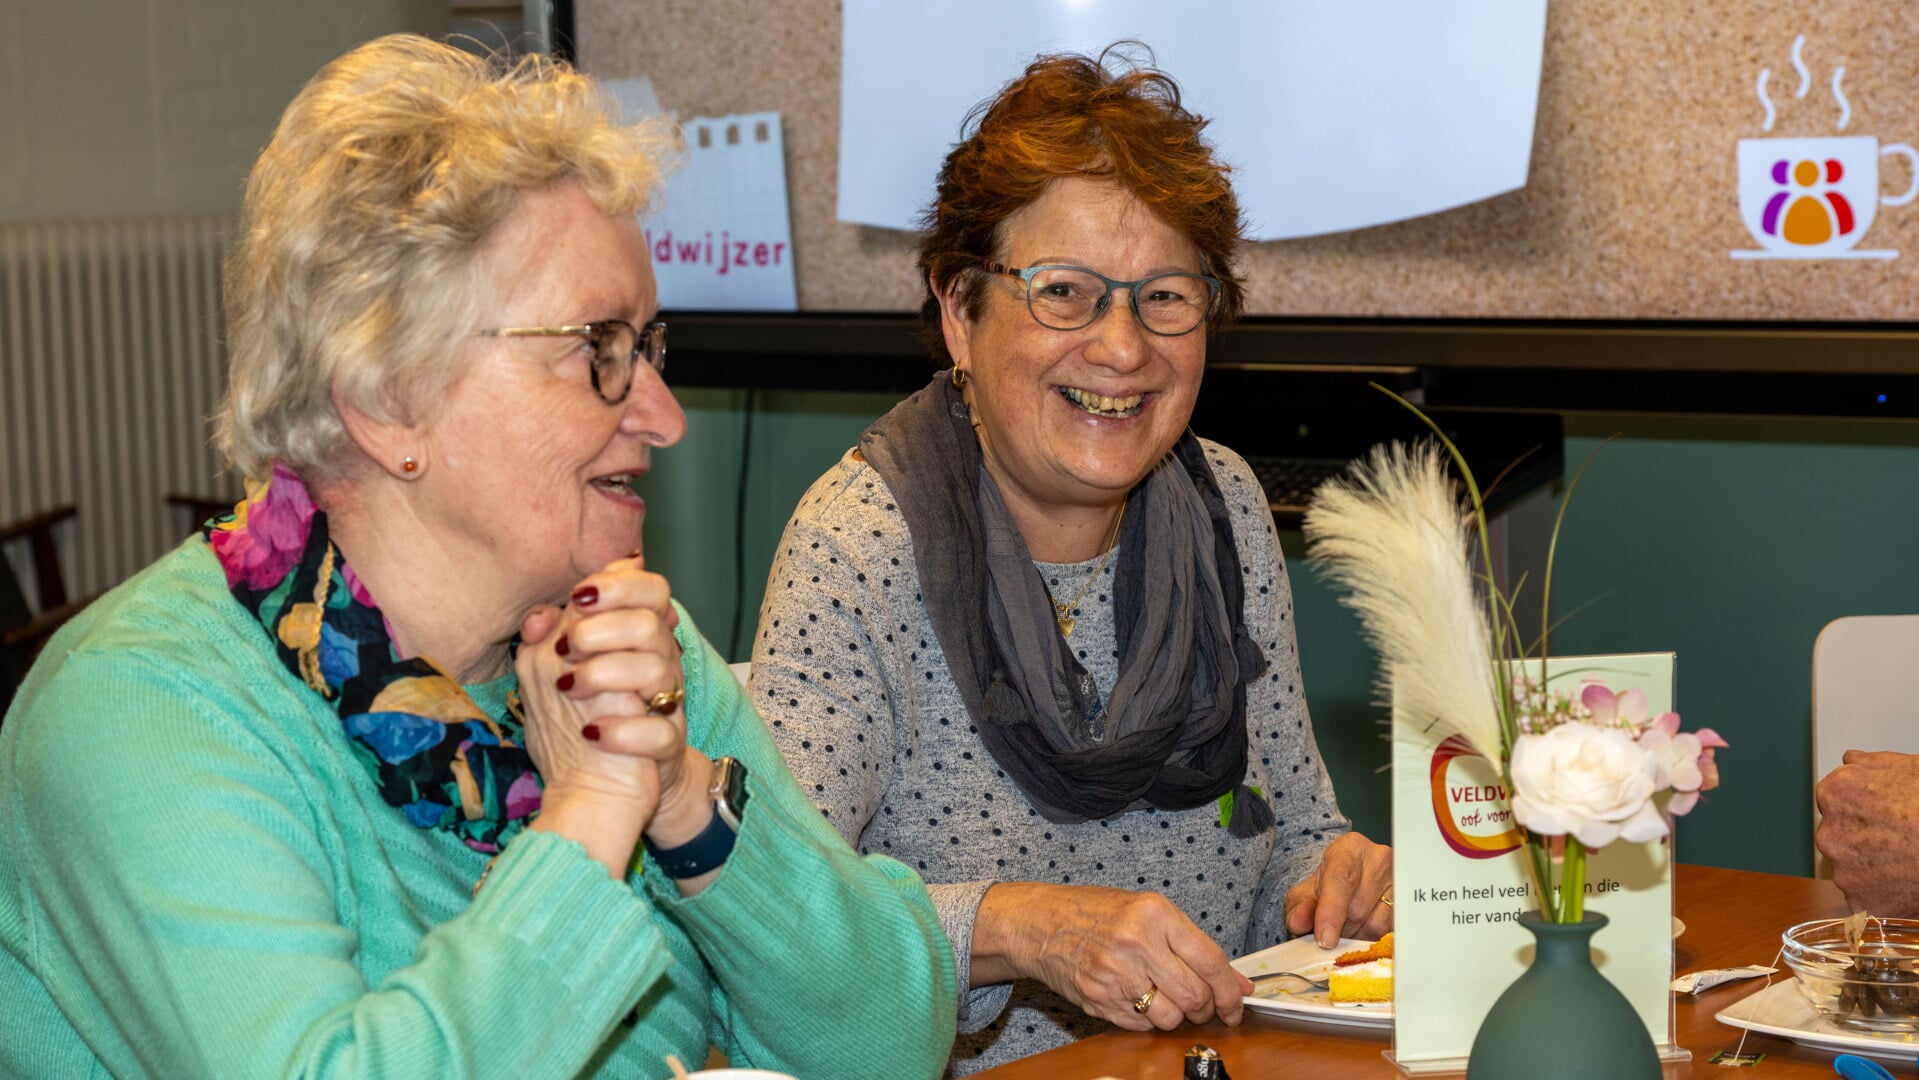 De organisaties binnen de Veldwijzer werken met vele vrijwilligers. Hoog tijd om ze eens kennis te laten maken met elkaar. FOTO: Henk Derks.